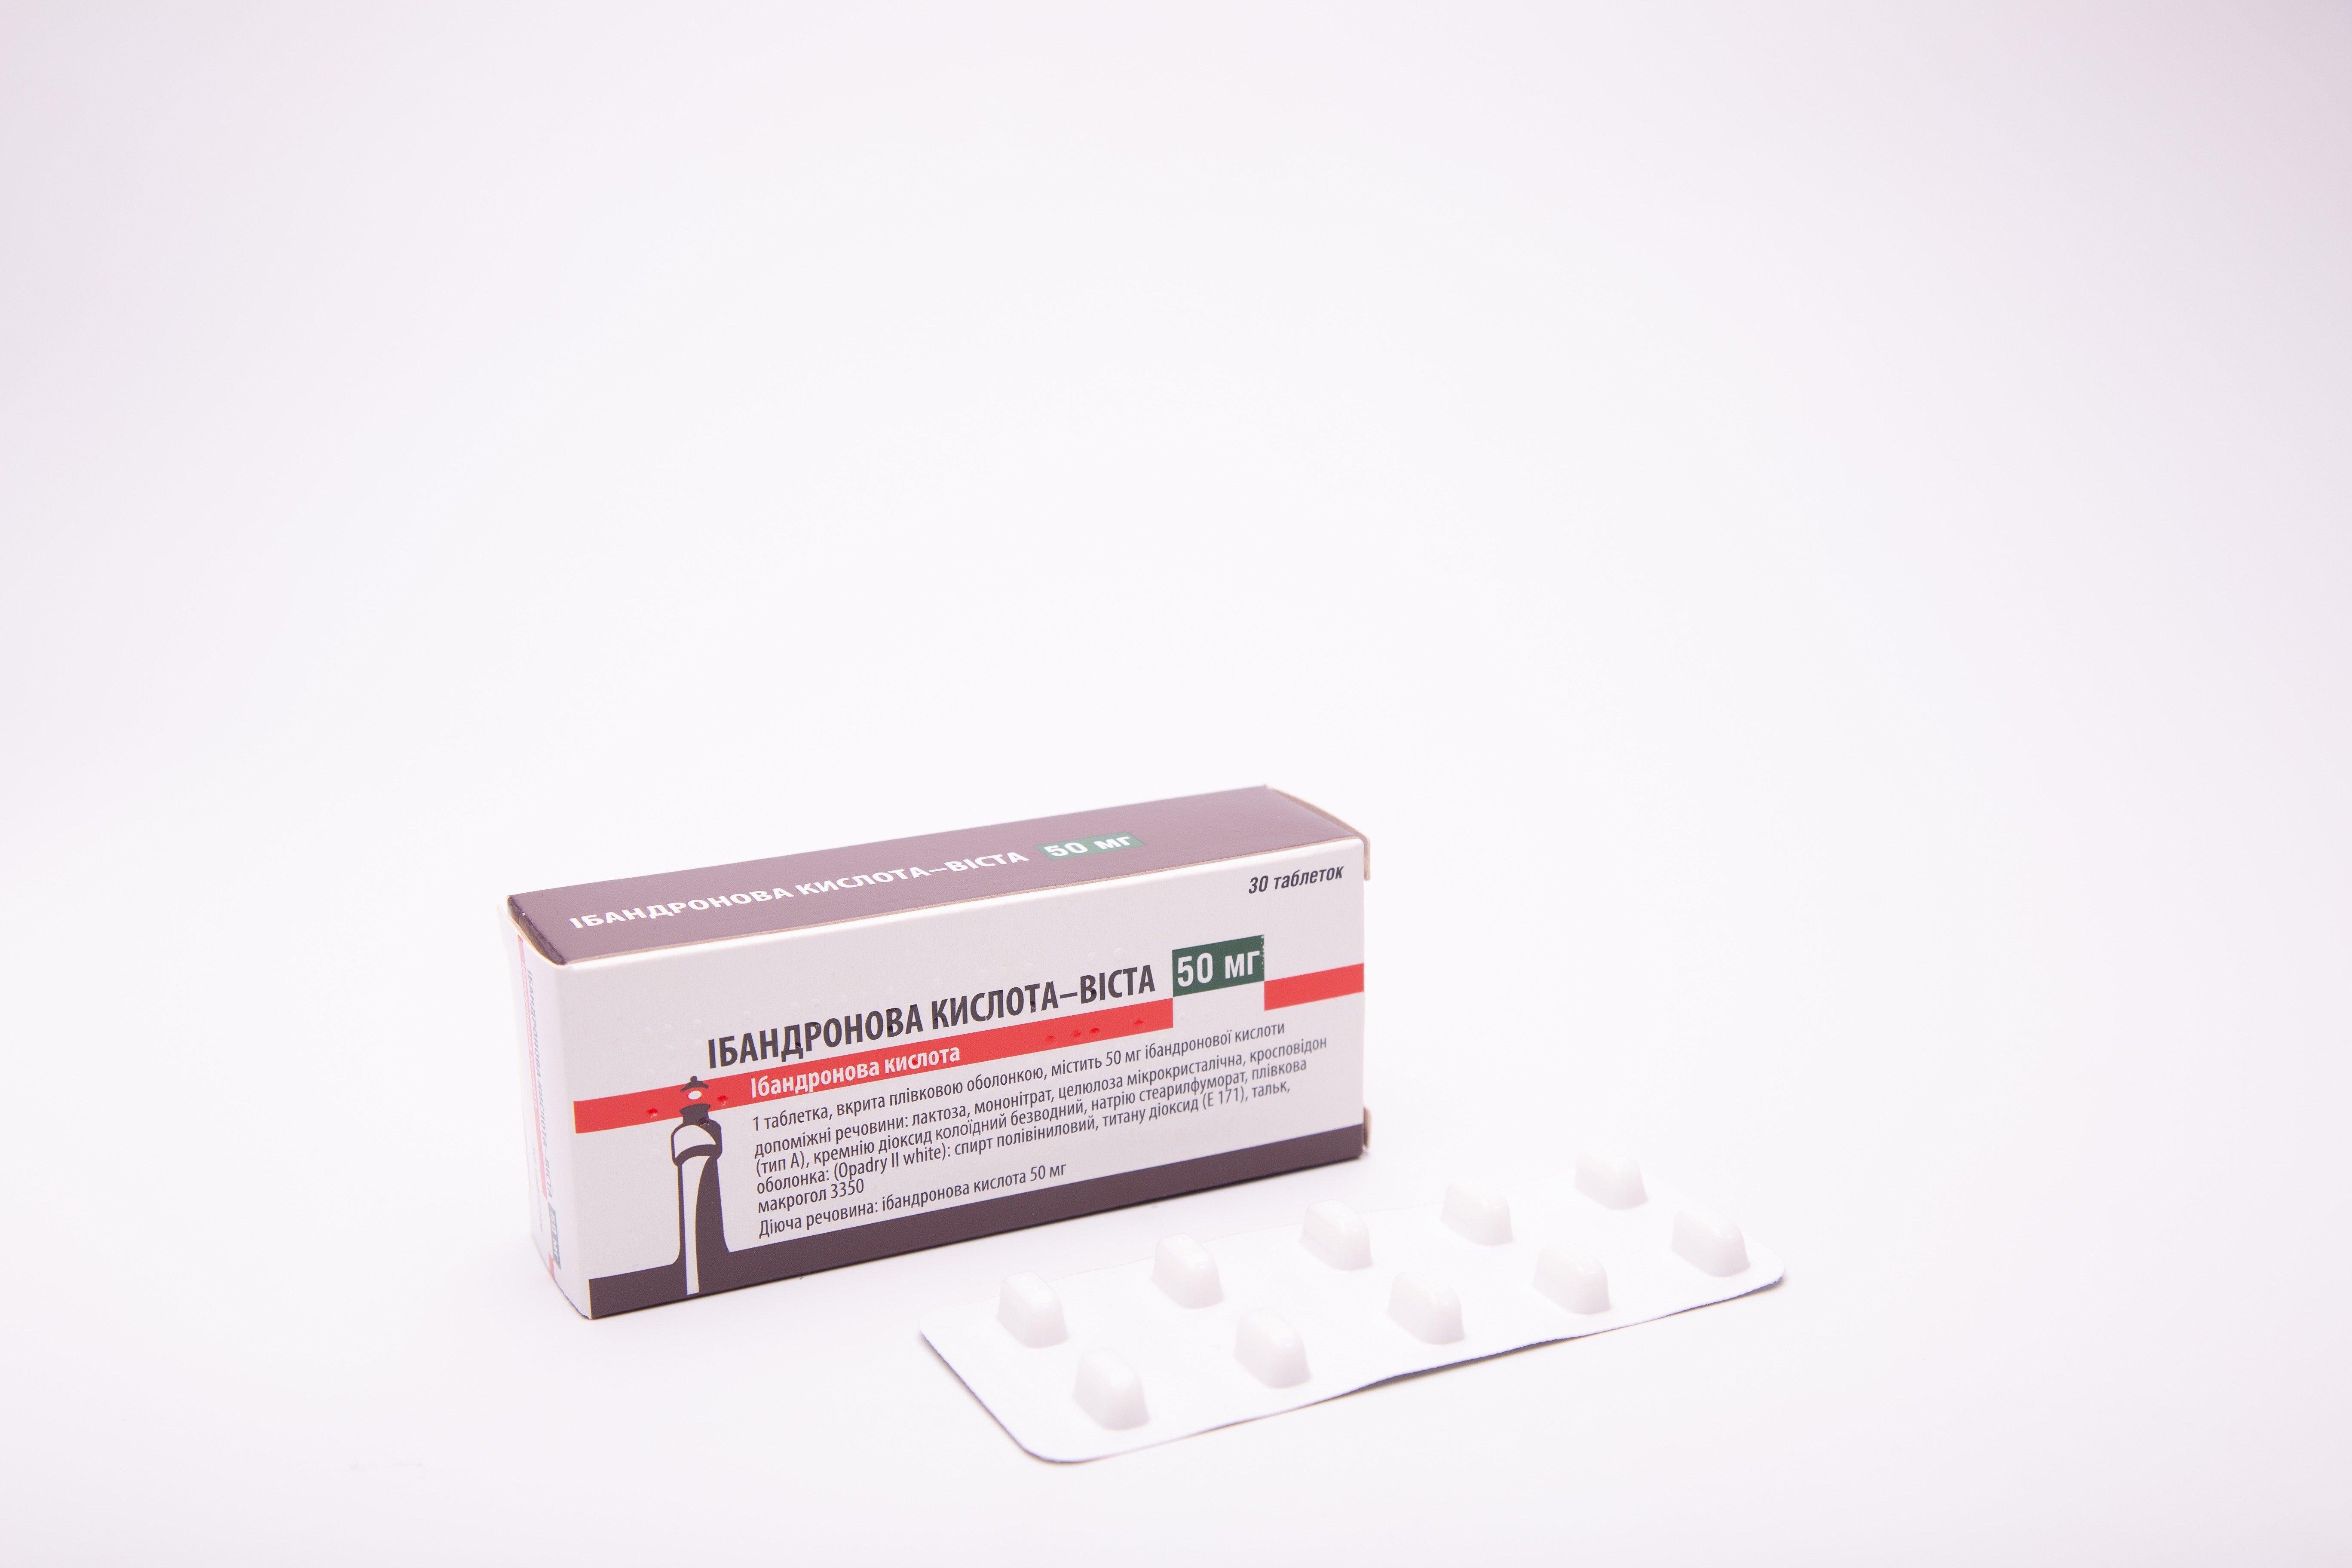 Ібандронова кислота-Віста таблетки по 50 мг, 30 шт.: інструкція, ціна .